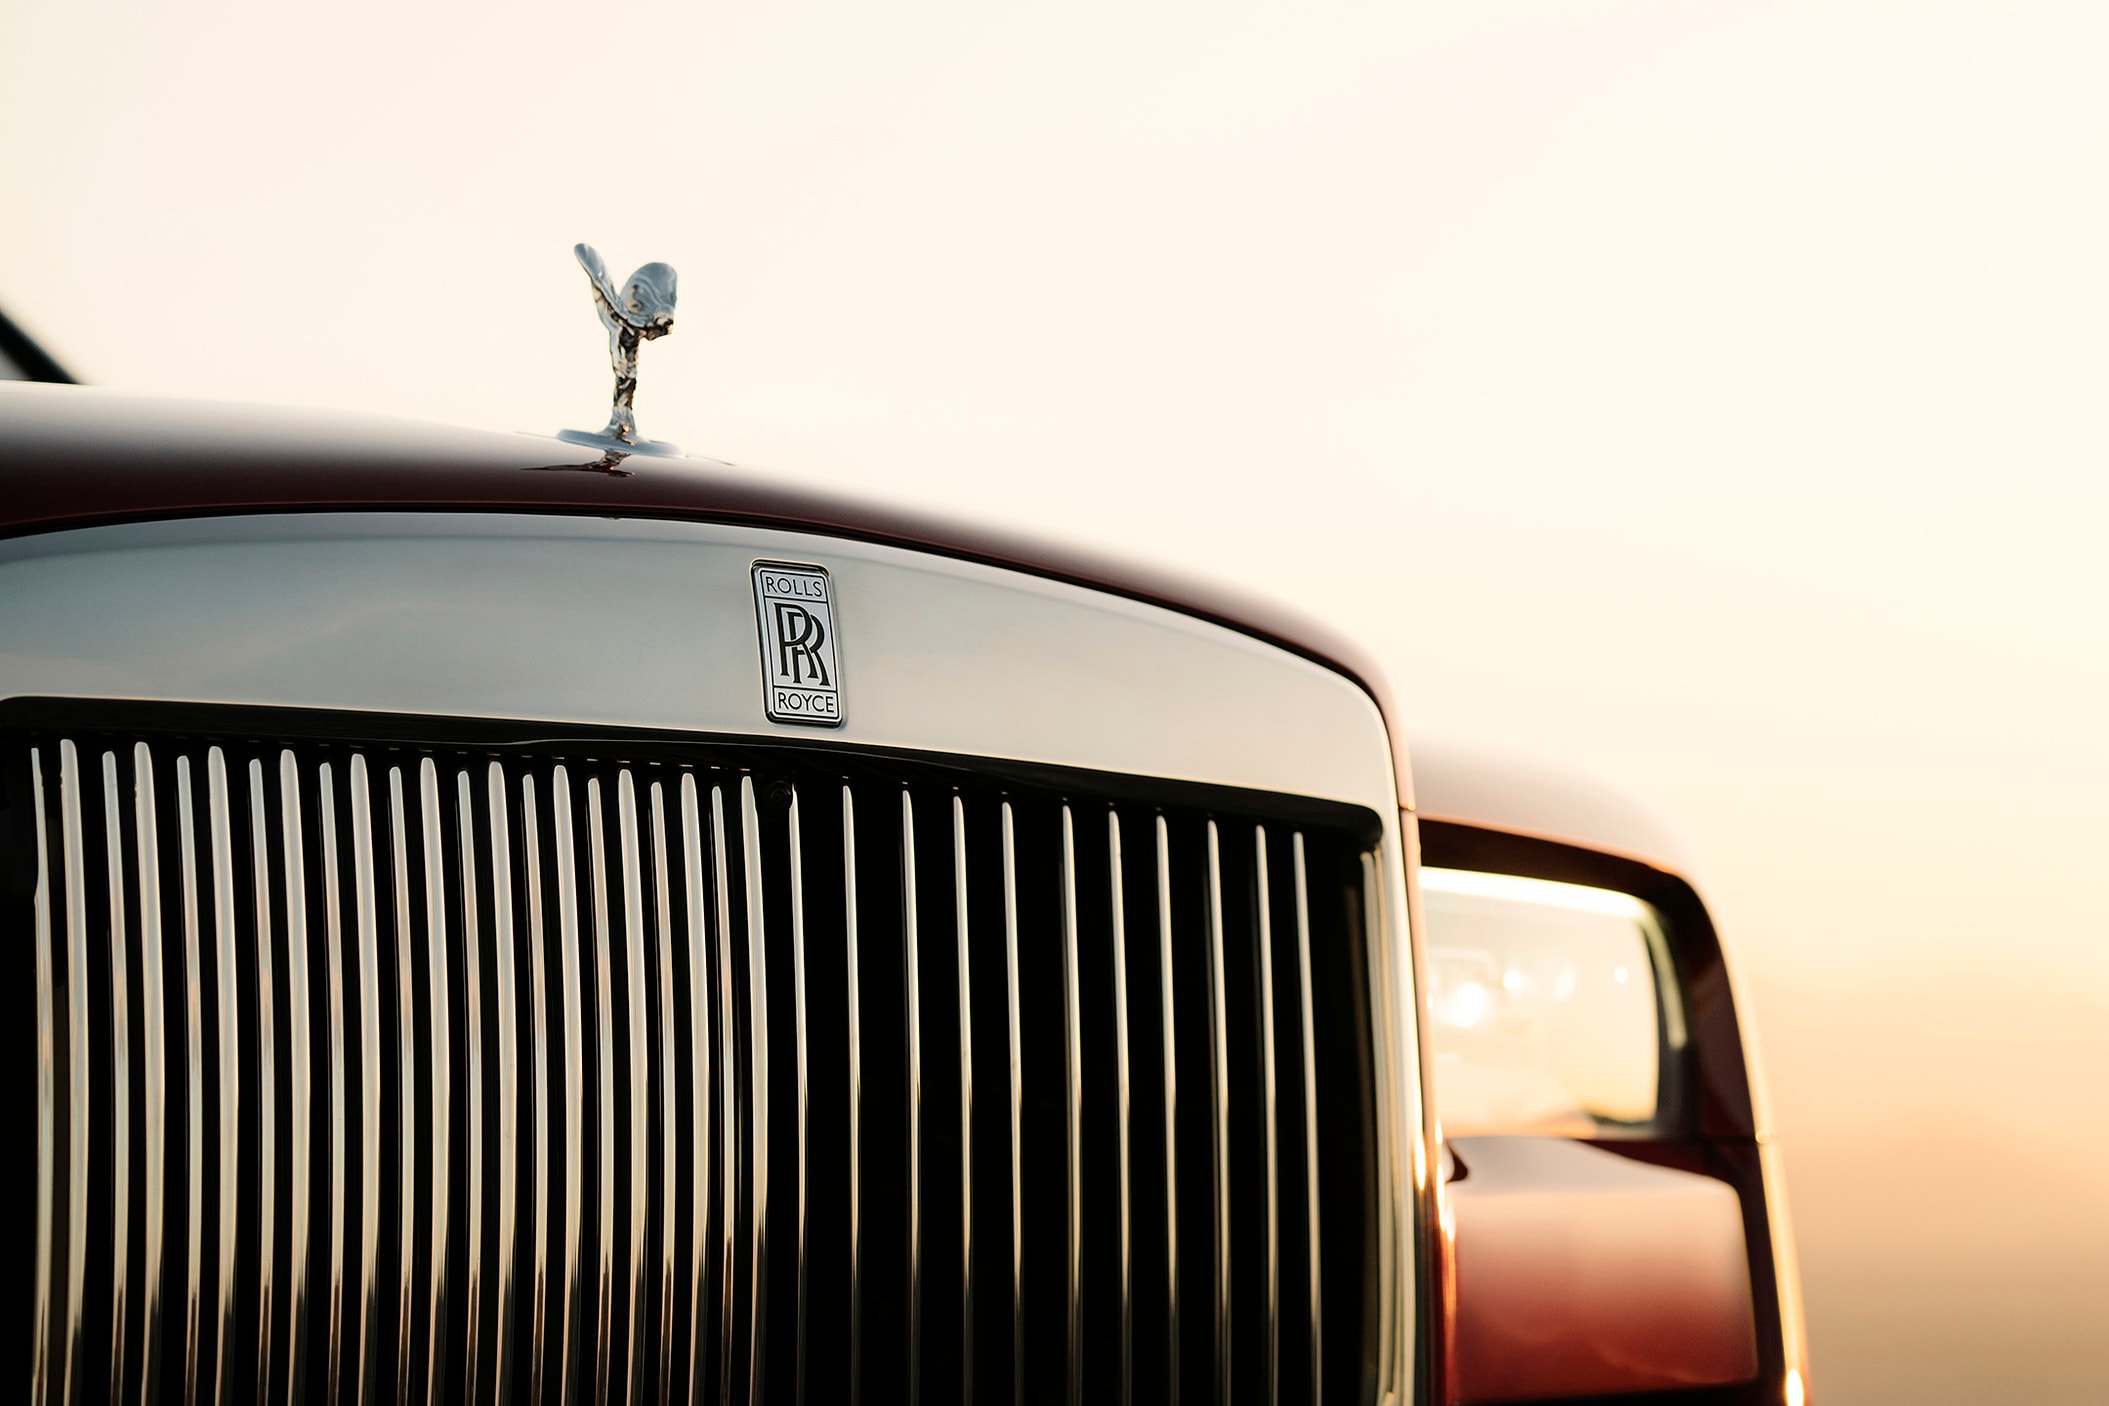 Rolls-Royce 初の SUVモデル Cullinan のコンフィギュレーターサイトがオープン ビスポークオーダーにも引けを取らない無限のカスタマイズが可能 「Rolls-Royce（ロールス・ロイス）」初のSUVとして先日のお披露目以降、大きな注目を集めるモデル・Cullinan（カリナン）のカーコンフィギュレーターがローンチされた。  このサイトでは、ボディカラーからインテリアの仕様、ホイールなどをオンライン上で自由にカスタマイズできるが、そこには無限といっても過言ではないほどの組み合わせを実現する豊富なオプションが用意されている。Inspired Specs、Exterior Style、Exterior Options、Interior Style、Interior Options、Personalization、Accessoriesの7つのカテゴリーから構成され、まず8種類のテーマから仕様を選択し、その後は16種類のボディカラー、23種類のコーチライン（ボディのサイドに描かれているストライプ）、7種類のホイール（加えて2種類の詳細オプション）の中から、自分好みの車両を目指して仕様に固めていく。またフロントに取り付けられた「Rolls-Royce」のシンボル、Spirit of Ecstasy（スピリット・オブ・エクスタシー）も4種類の素材からセレクトすることが可能。外装のカスタマイズが終わると、続いて内装の選択へと移る。ここでも用意された6種類のスキームの中からひとつに絞り込んだ後は、8種類のウッドパネルやレザーの加工に至るまで目移りするようなオプションの数々から細部に渡ってカスタマイズしていく流れとなる。  高級車の代名詞的存在である「Rolls-Royce」を自分好みにカスタマイズしたい方は、こちらからシュミレーションをして、夢を膨らませてみてはいかがだろうか。